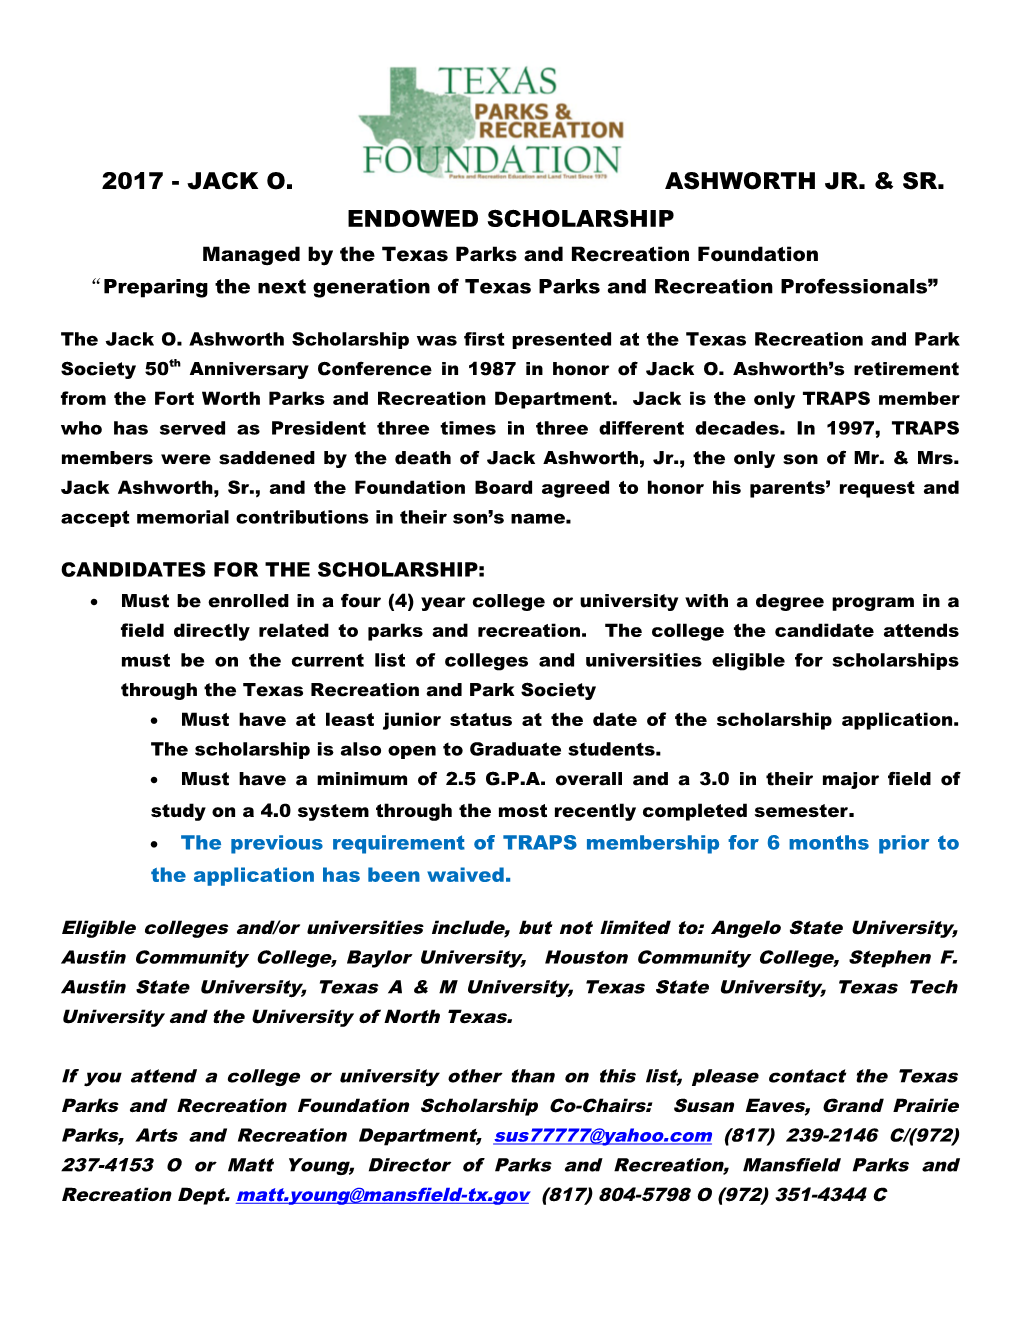 2017 - Jack O. Ashworth Jr. & Sr. Endowed Scholarship